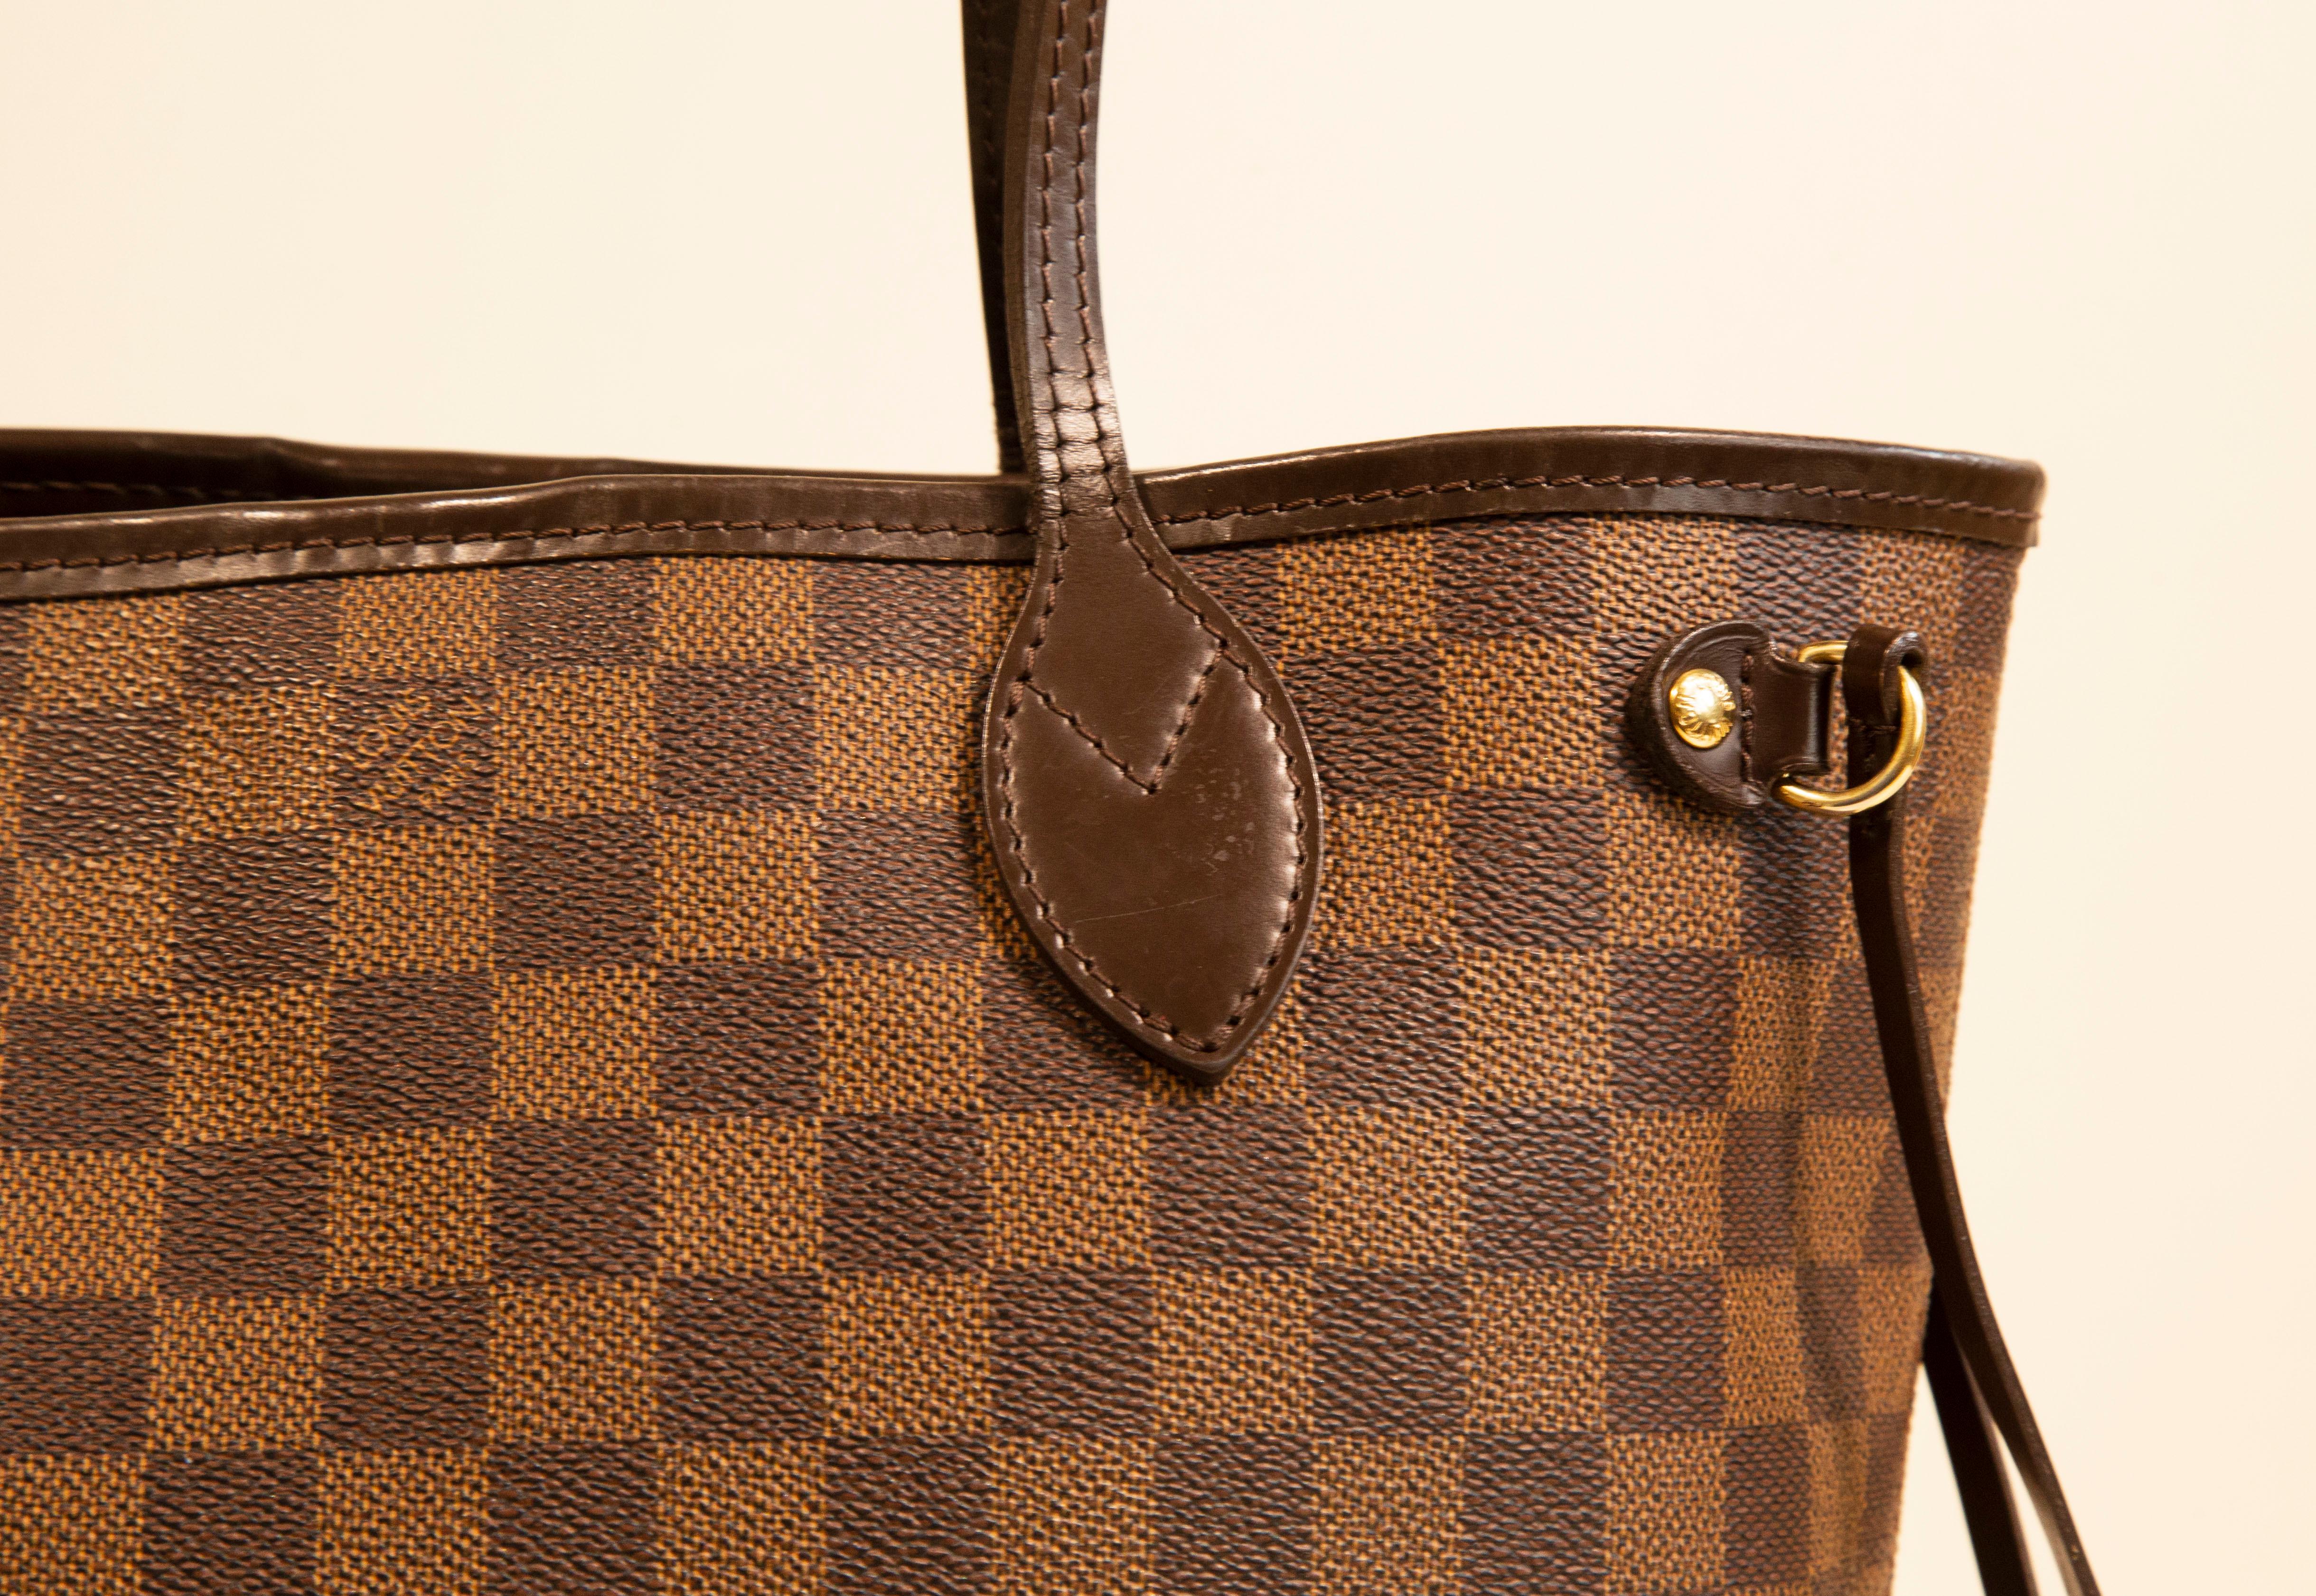 Eine Louis Vuitton Neverfull PM-Tasche. Das Äußere der Tasche besteht aus Damier-Ebene mit braunen Lederbesätzen und goldfarbenen Beschlägen. Der Innenraum ist mit rotem Stoff ausgekleidet. Das Äußere weist geringe Gebrauchsspuren auf. Das Innere